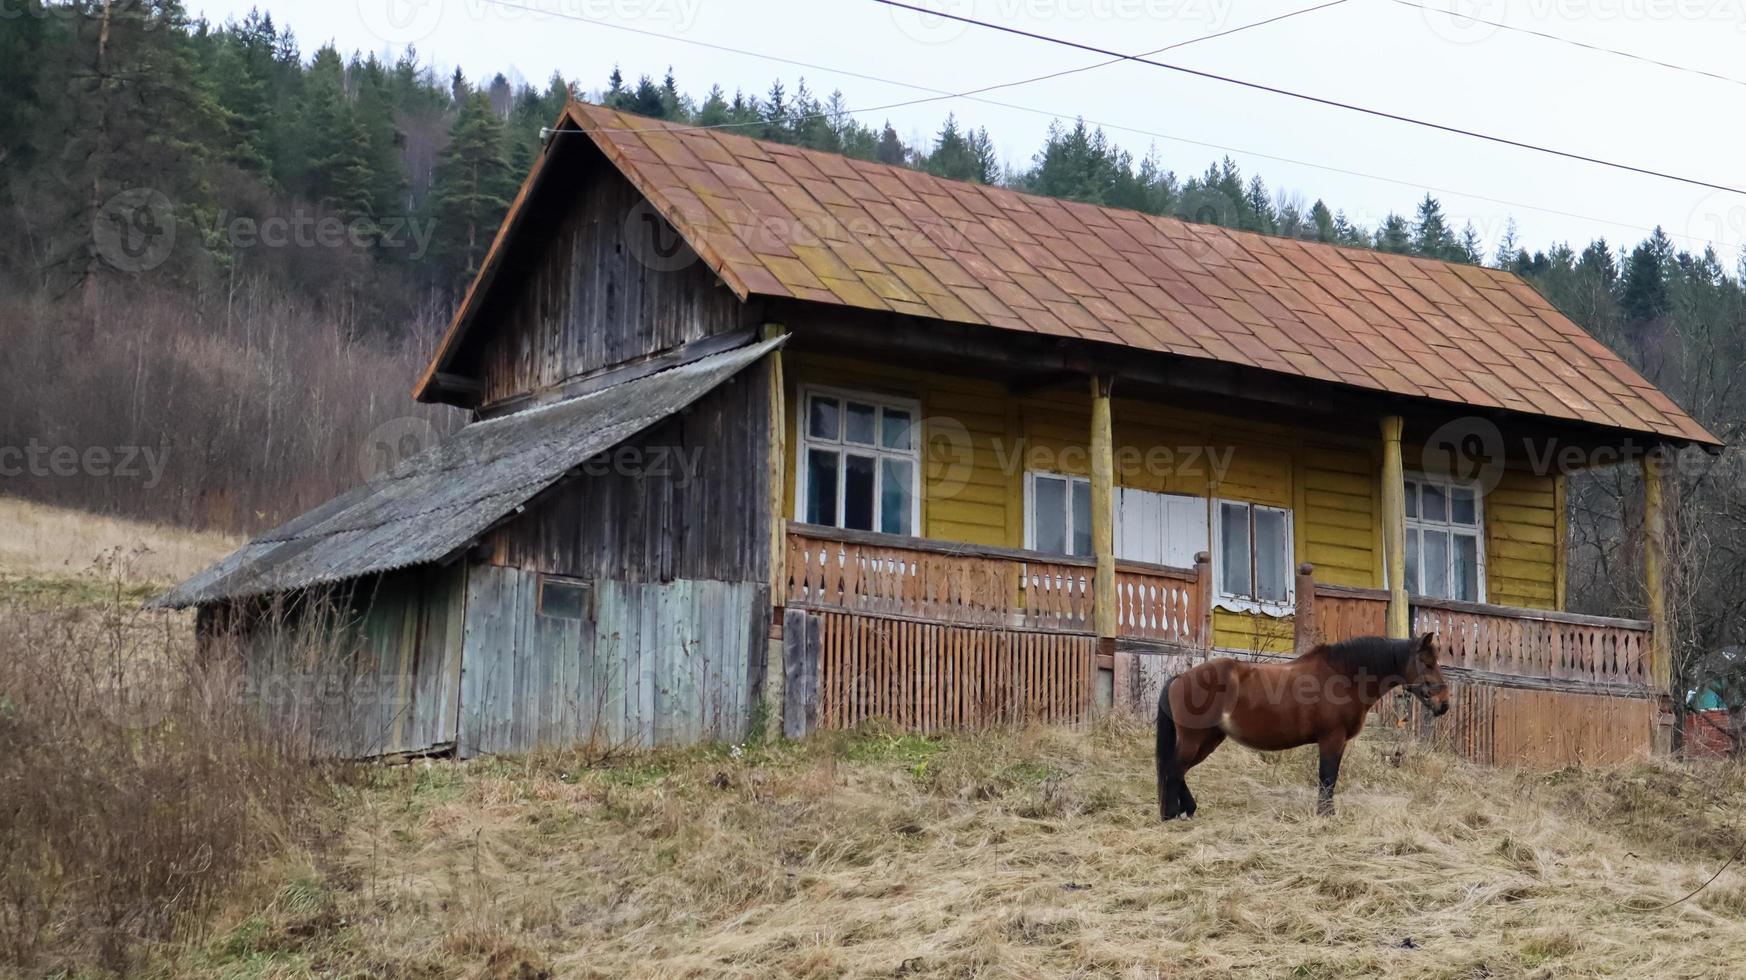 cheval brun près d'une vieille maison de village en bois. à proximité il y a une belle forêt et des montagnes. ukraine, yaremche - 20 novembre 2019 photo